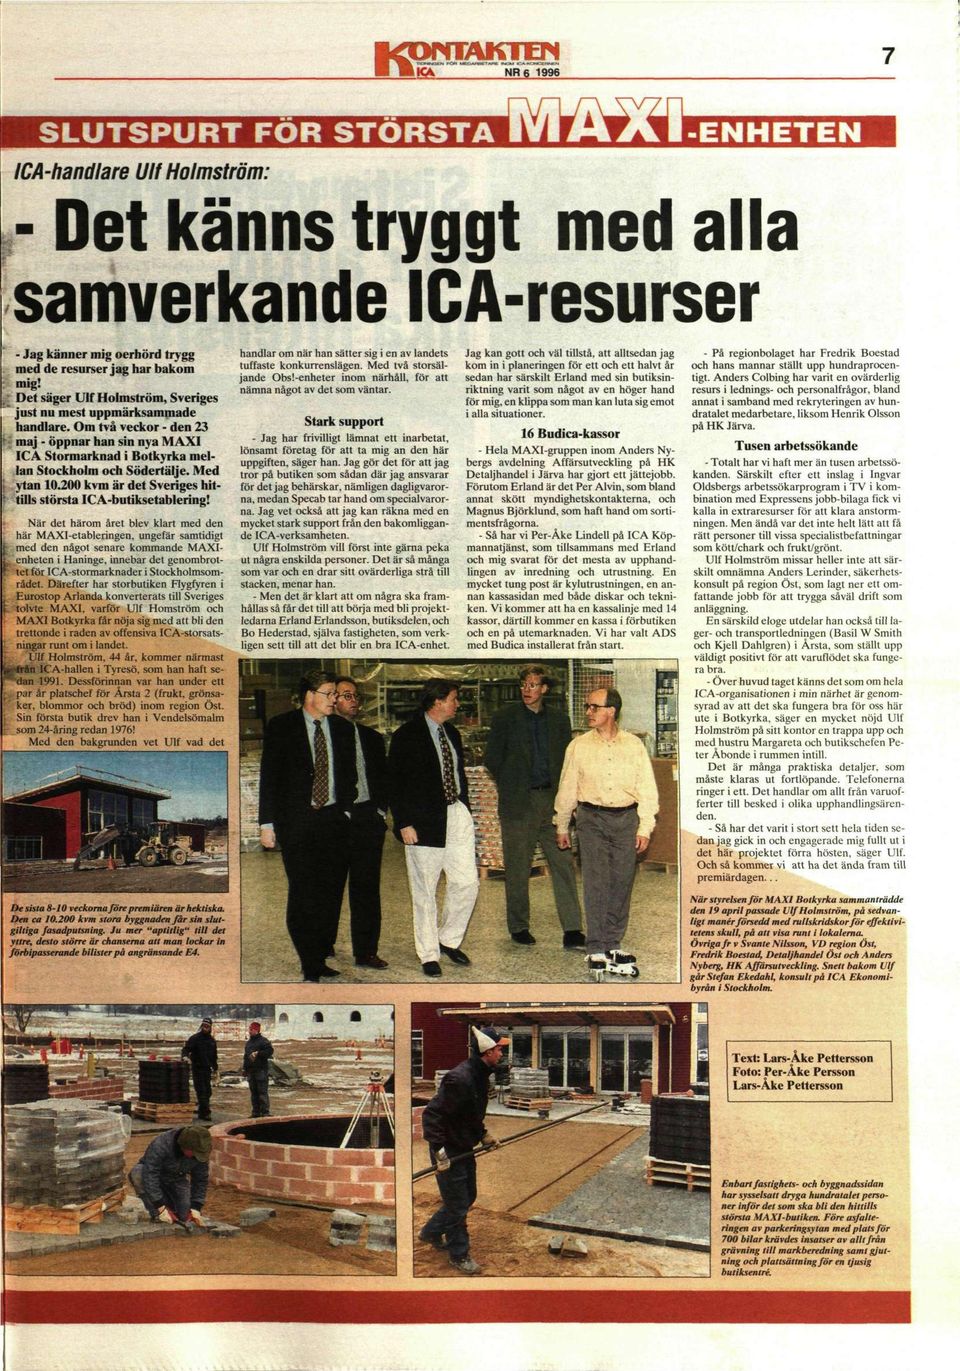 200 kvm är det Sveriges hittills största ICA-butiksetablering!